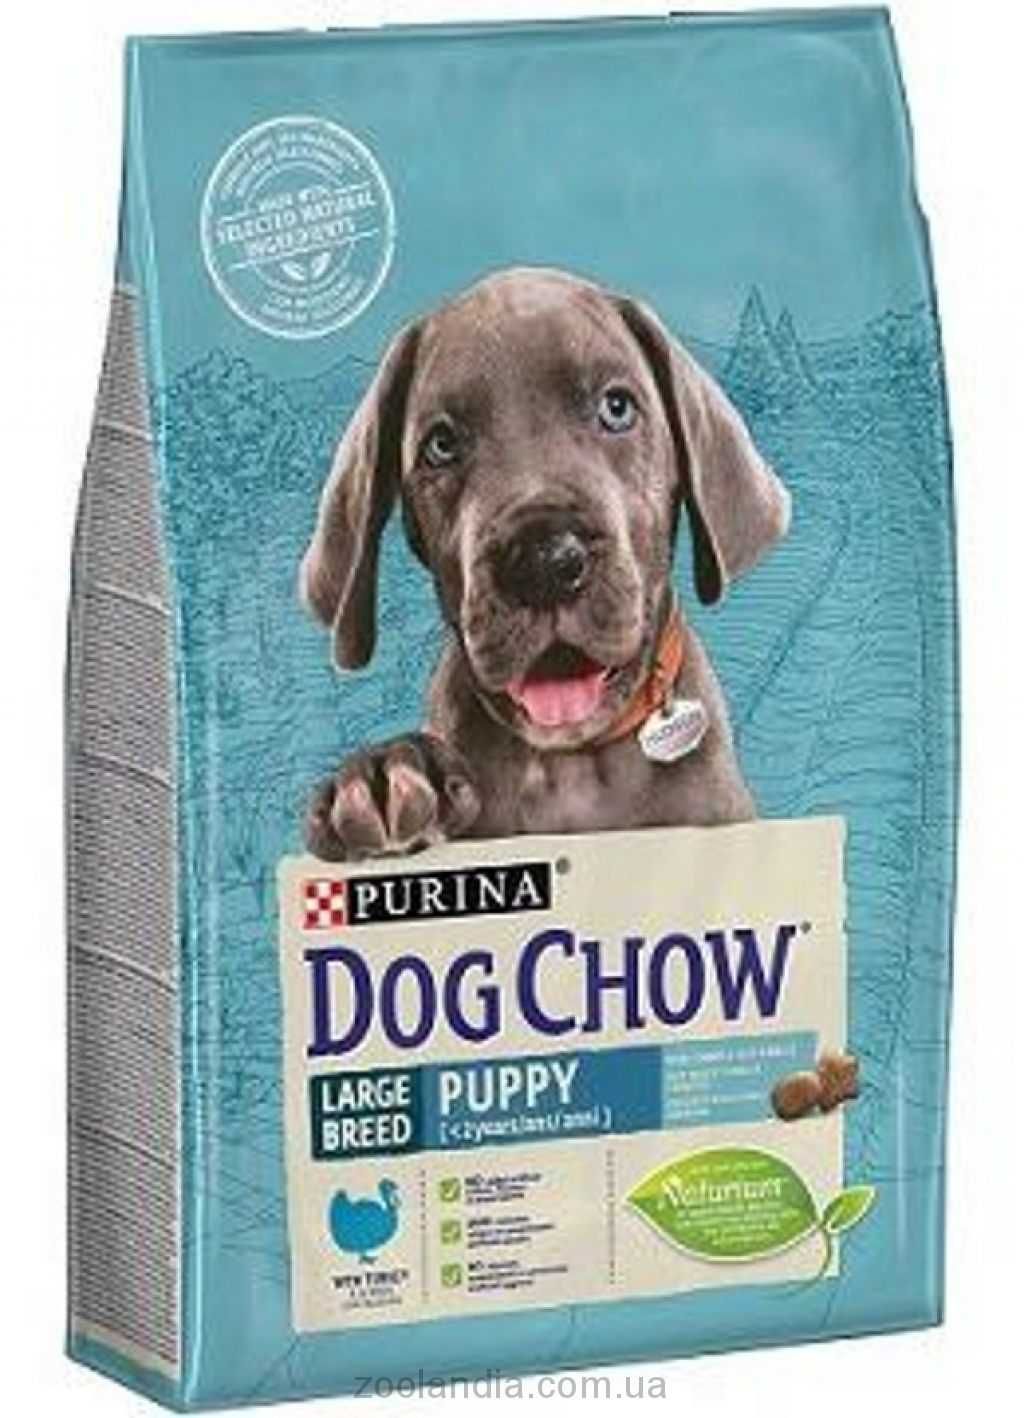 Dog Chow Puppy Large Breed -для щенков крупных пород с индейкой 14кг